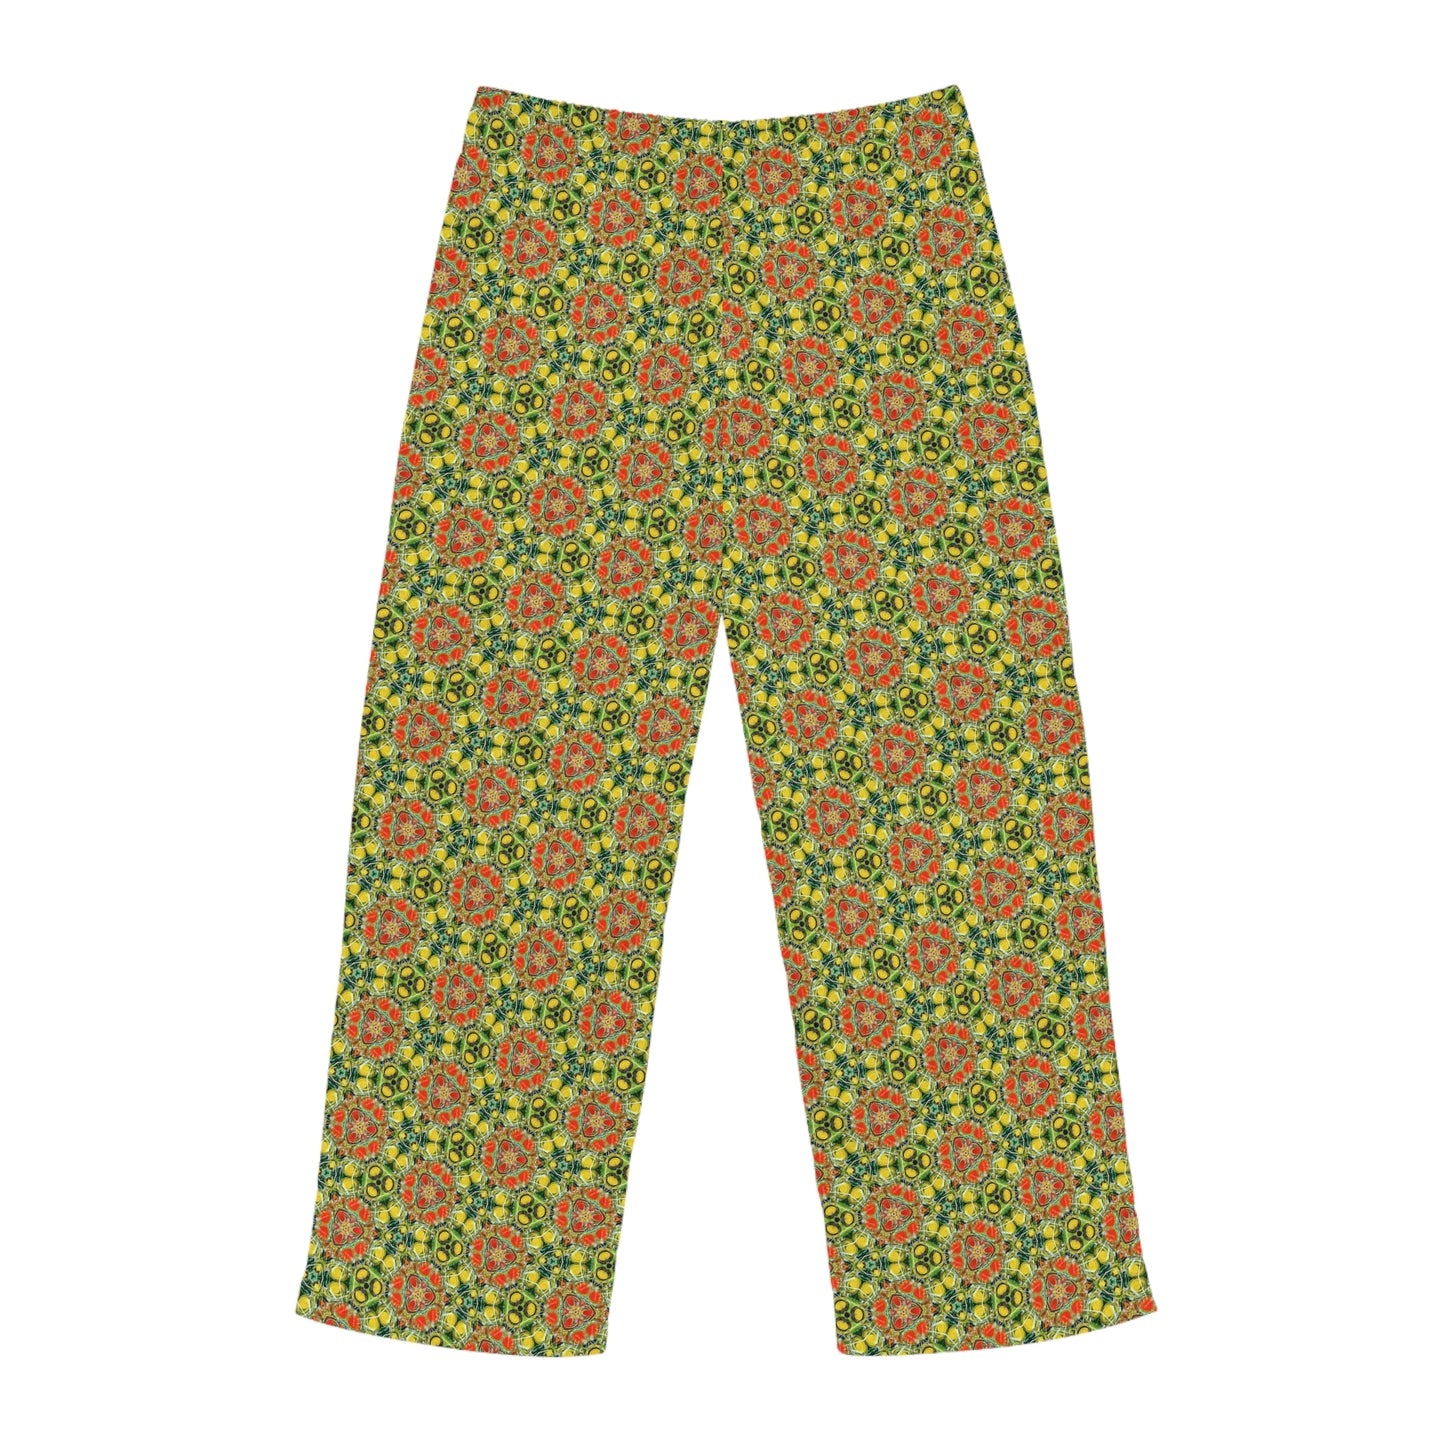 Psychedelic Garden Men's Pajama Pants